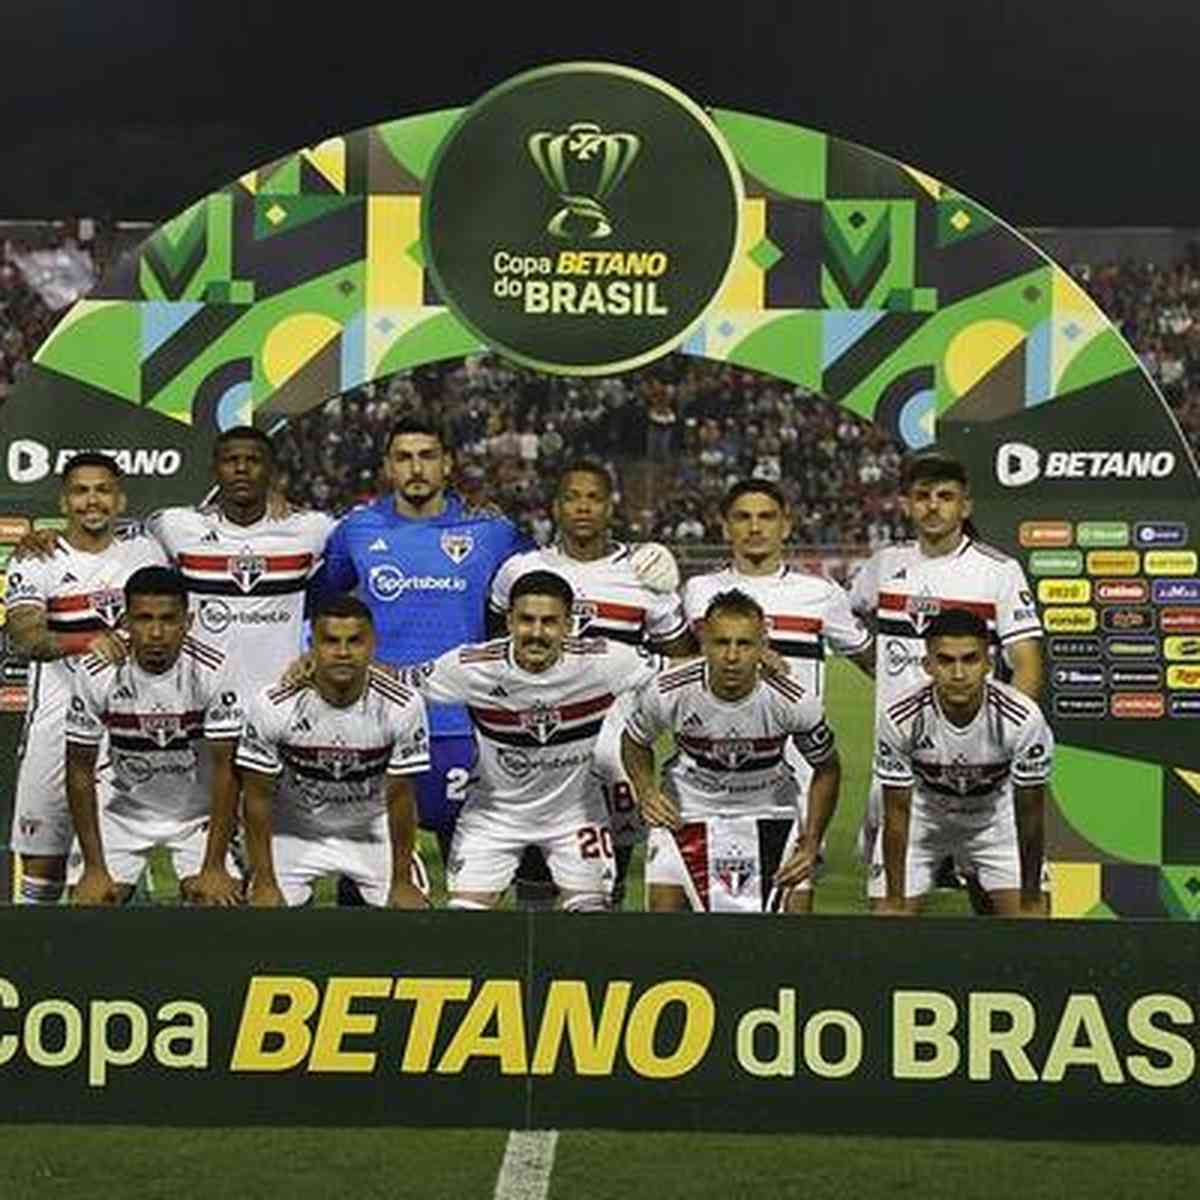 Copa São Paulo 2023: saiba quais são os jogos de hoje